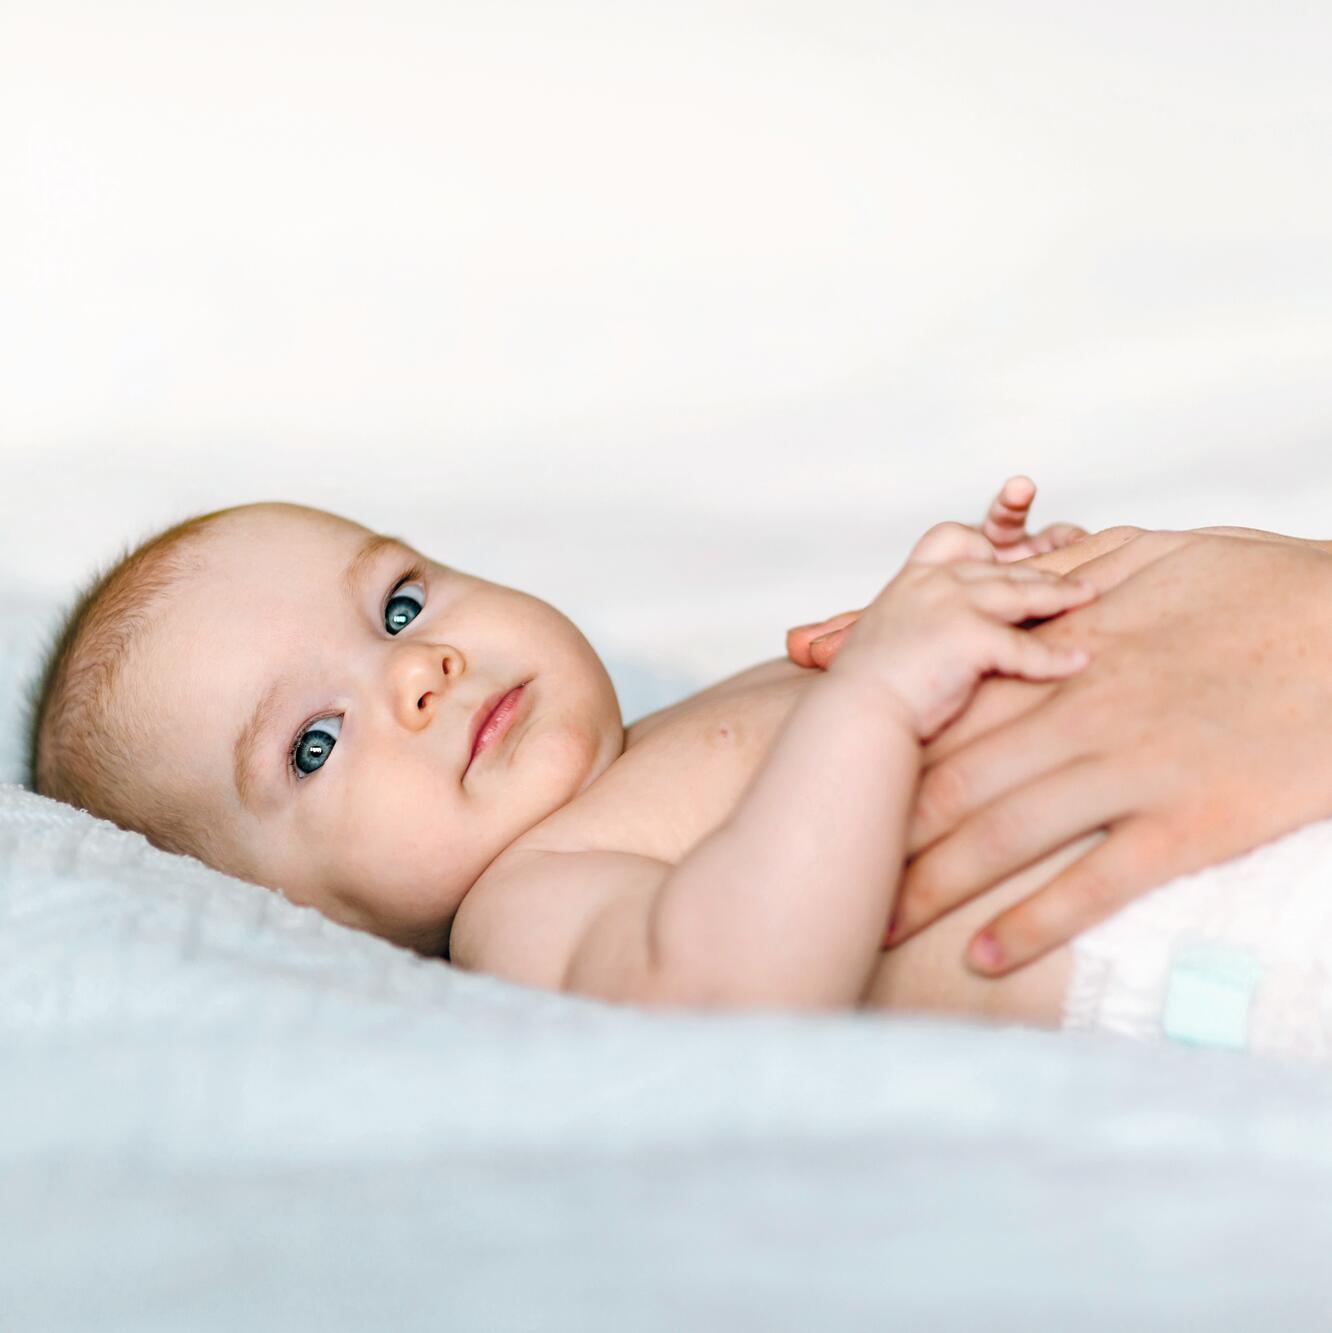 El cuidado de la piel con tendencia atópica en bebés y niños